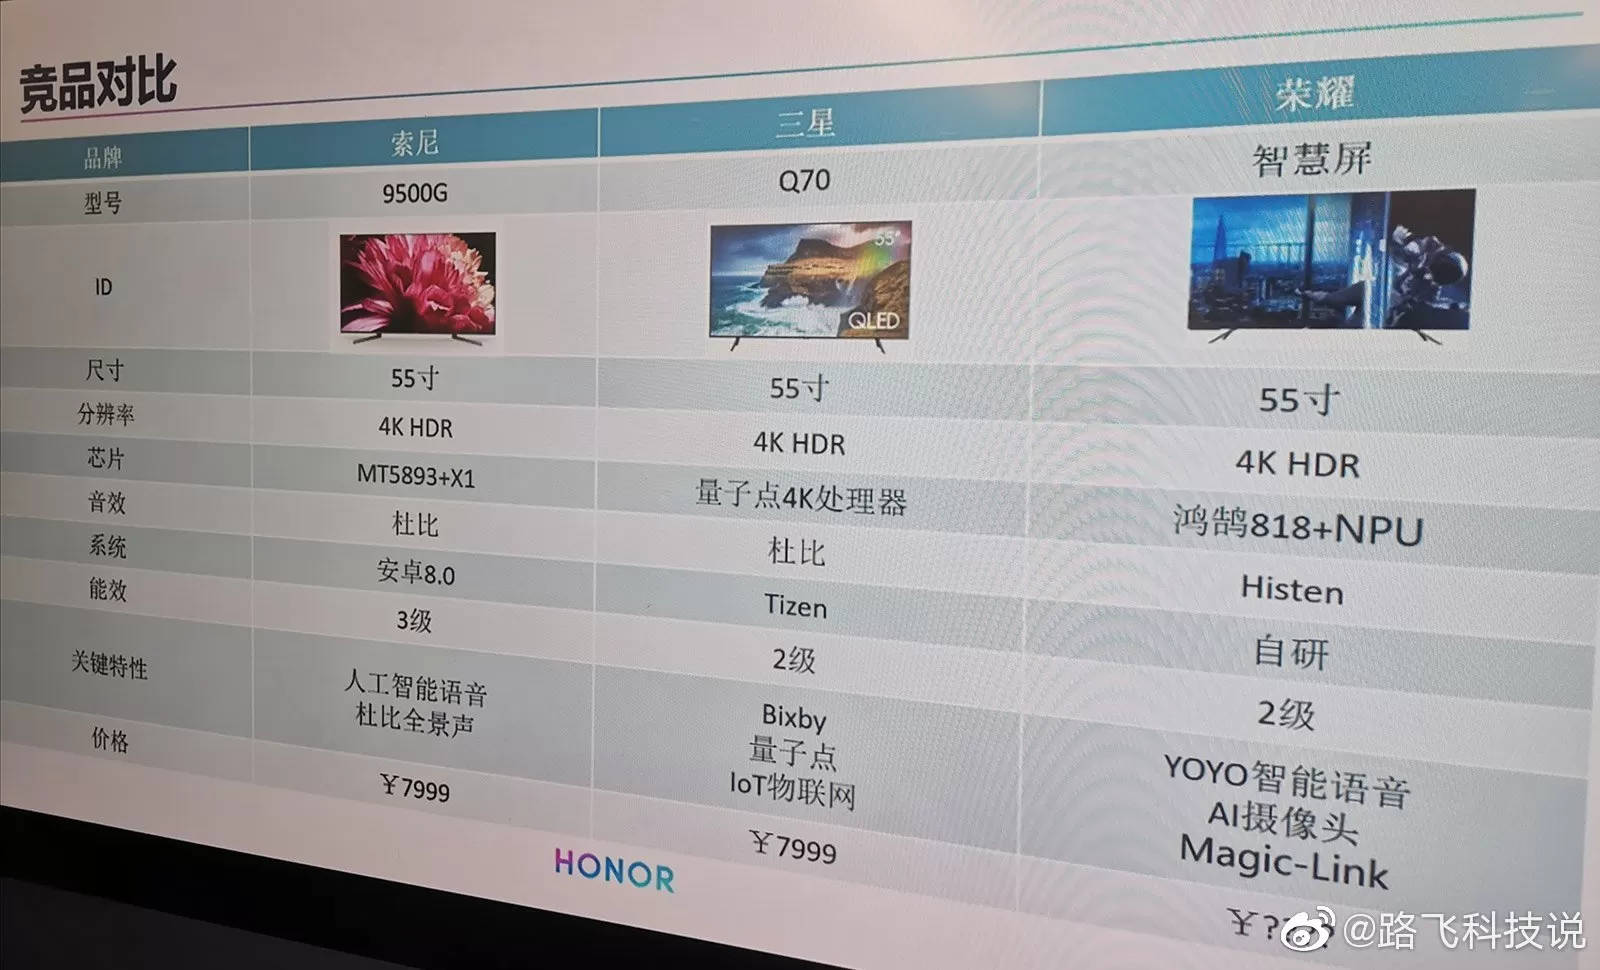 Honor Smart Screen TV telewizor Huawei kiedy premiera zdjęcia plotki przecieki wycieki specyfikacja techniczna